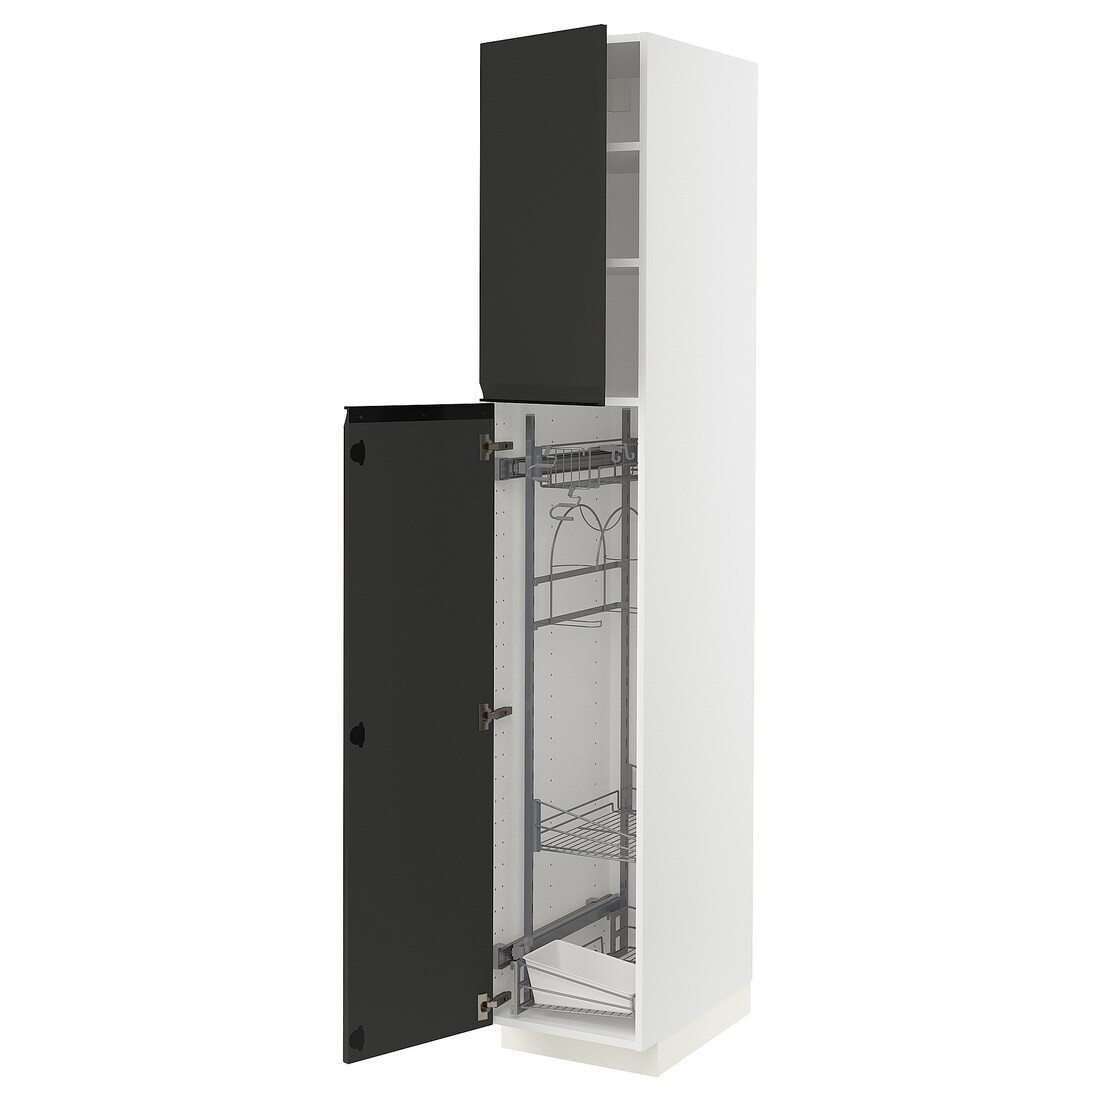 IKEA METOD МЕТОД Высокий шкаф с отделением для аксессуаров для уборки, белый / Upplöv матовый антрацит, 40x60x220 см 49492888 | 494.928.88